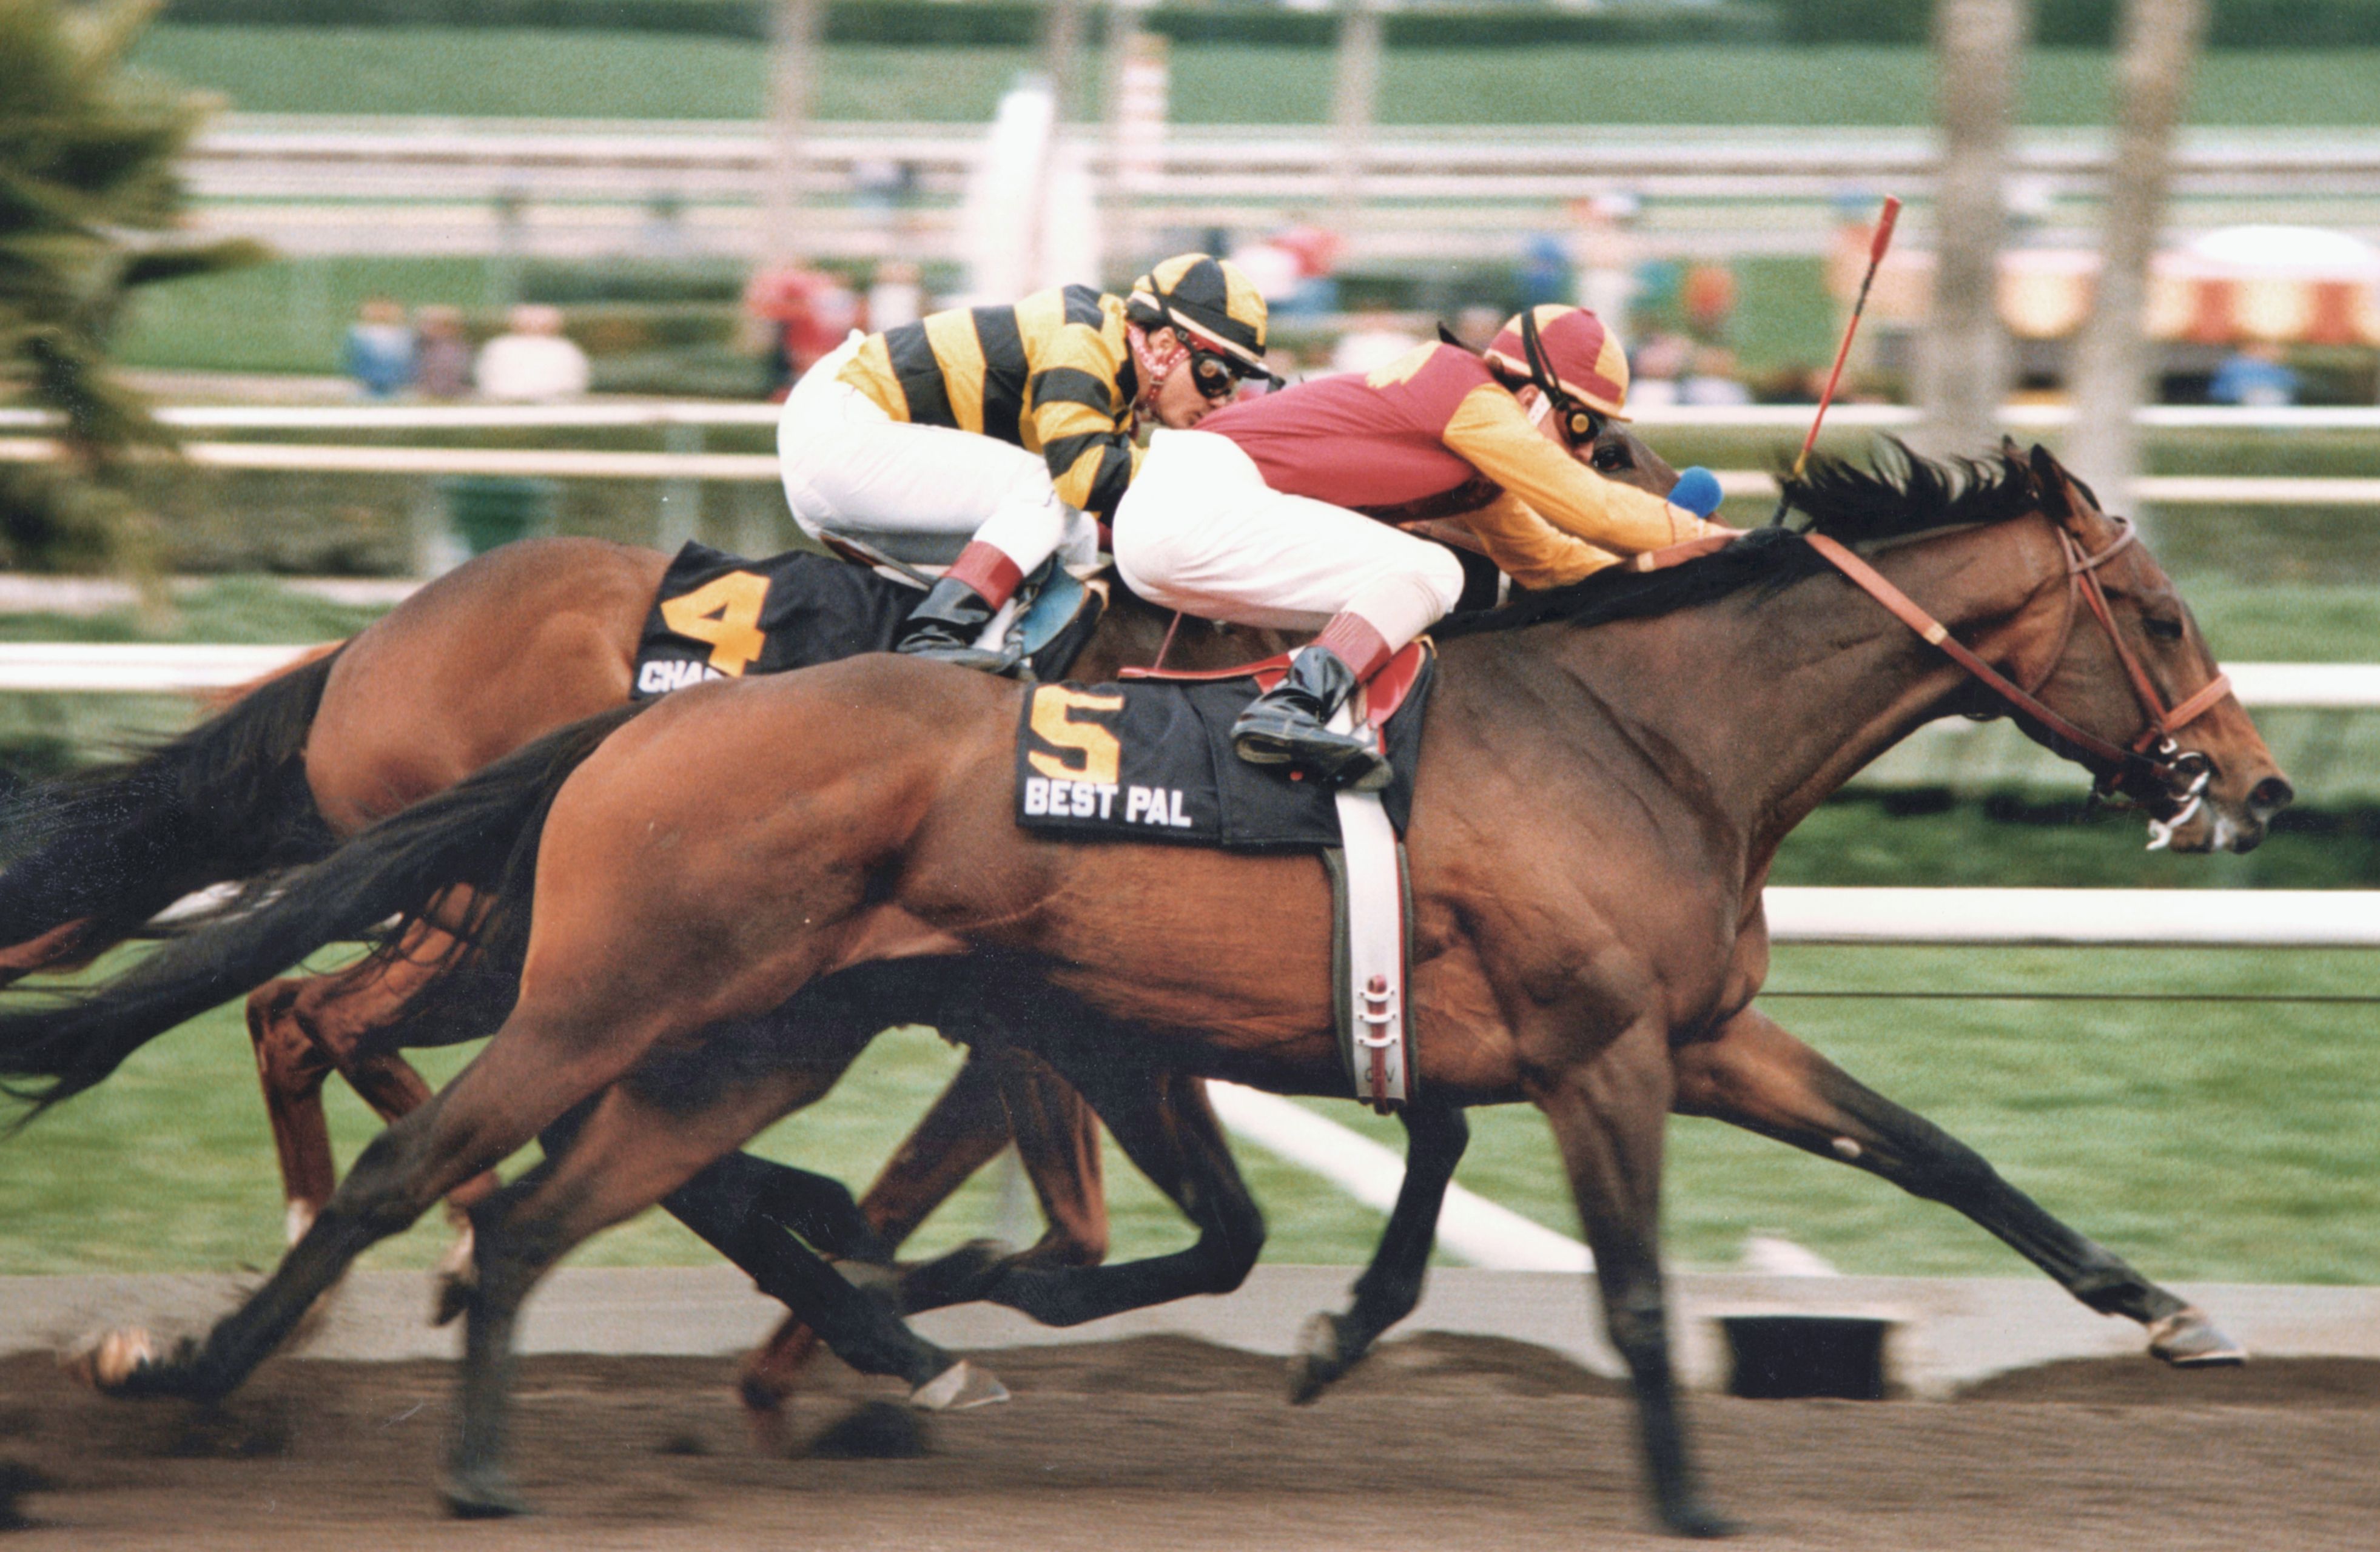 Best Pal (Kent Desormeaux up) winning the 1992 Charles H. Strub Stakes at Santa Anita (Benoit Photo)